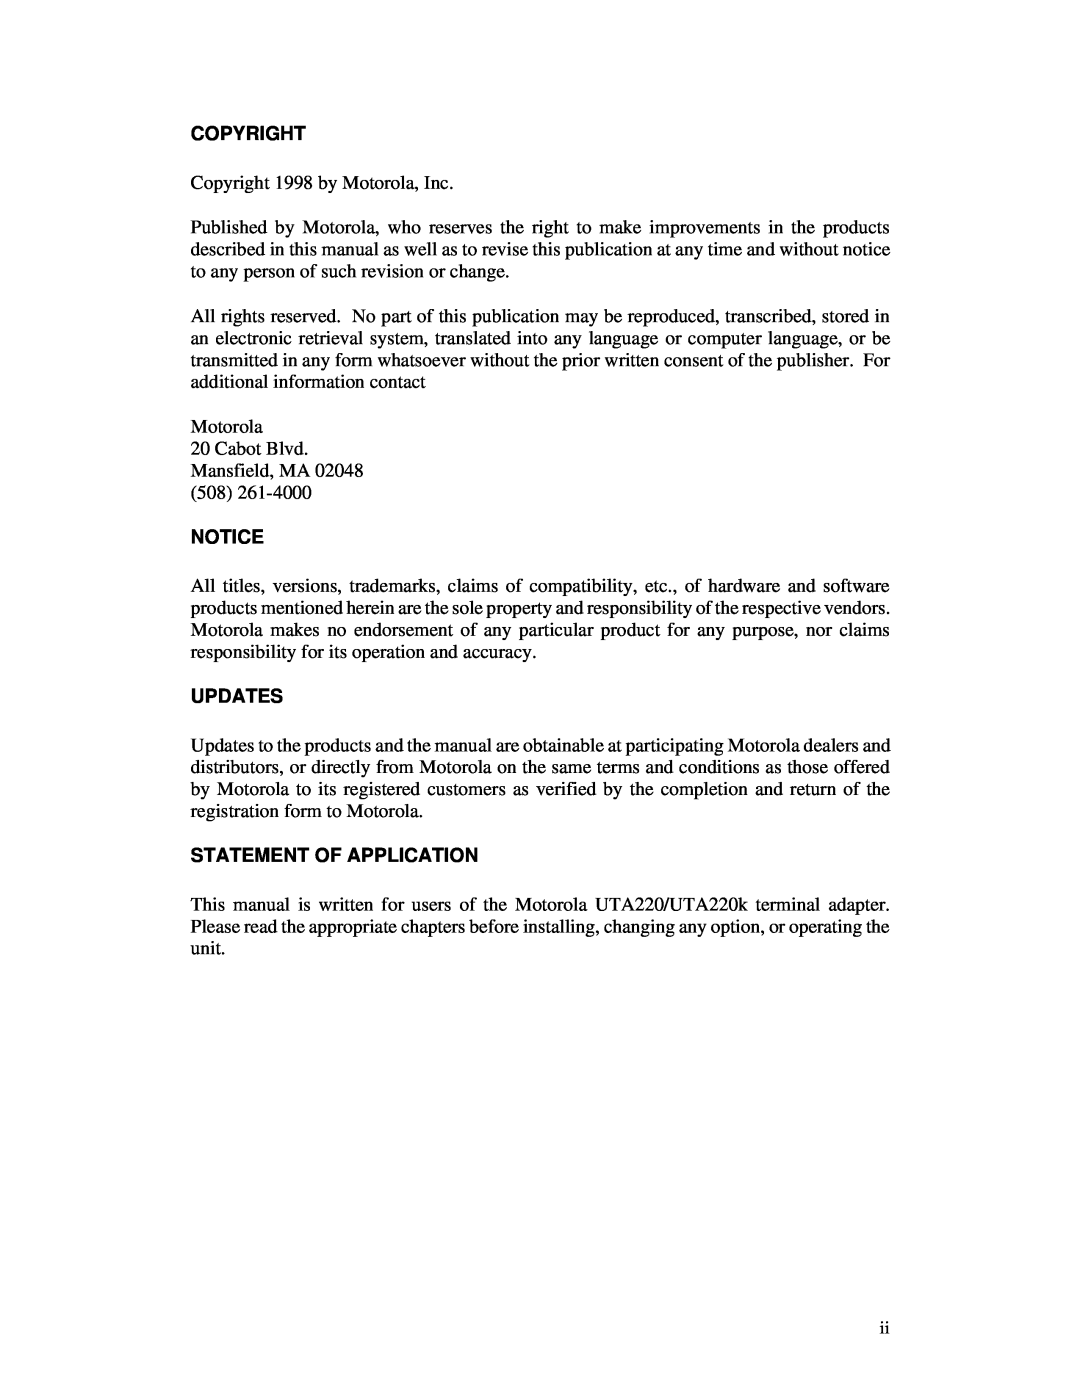 Northern UTA220/UTA220k manual Copyright, Updates, Statement Of Application 